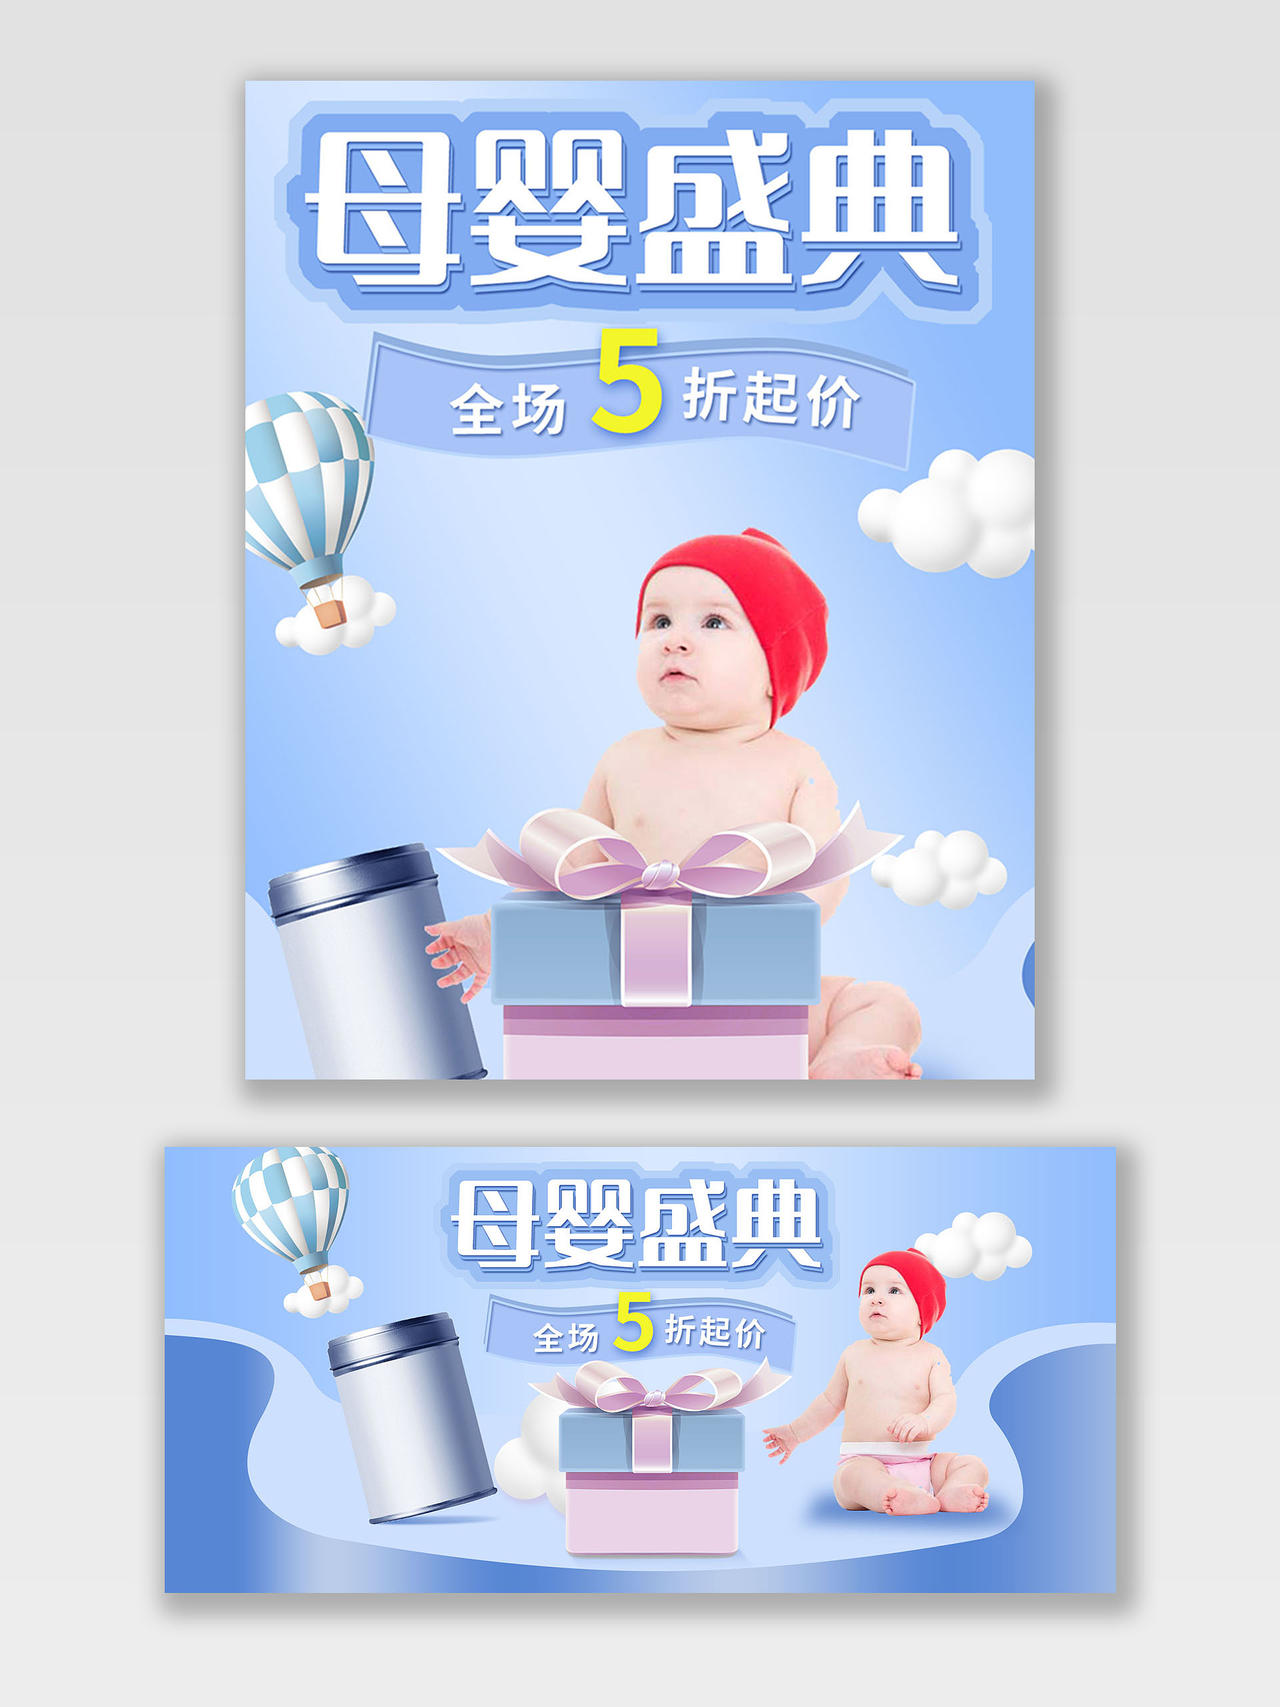 蓝紫色平面母婴盛典母婴用品奶粉天猫母婴亲子节海报banner